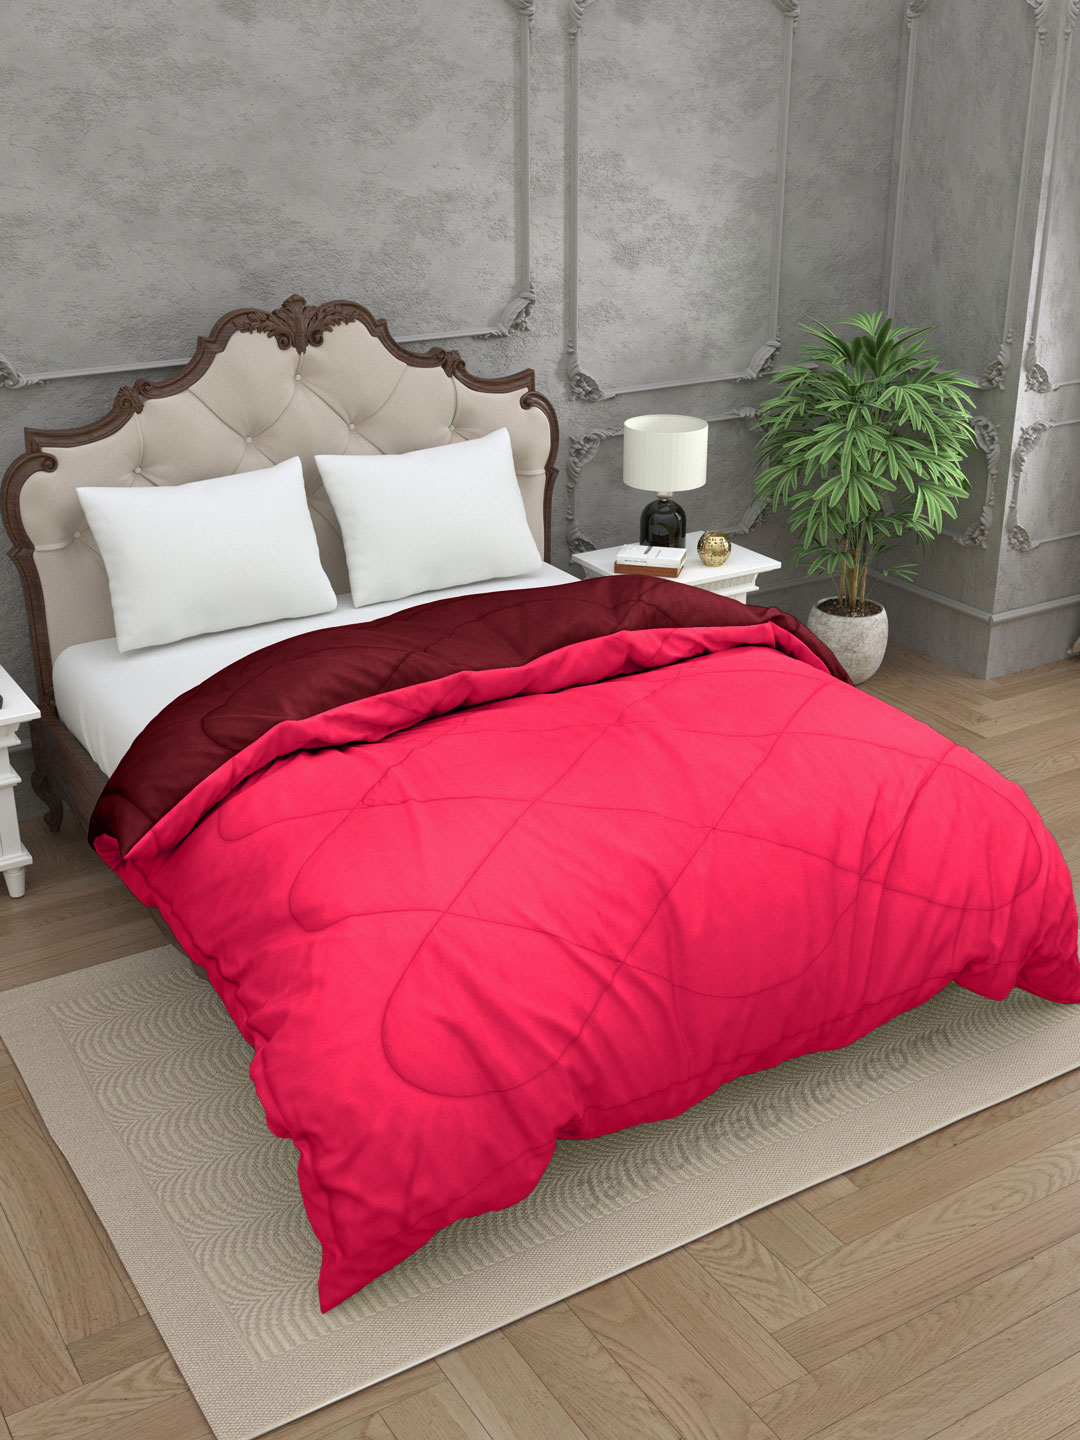 Pink-Maroon Double Bed Comforter